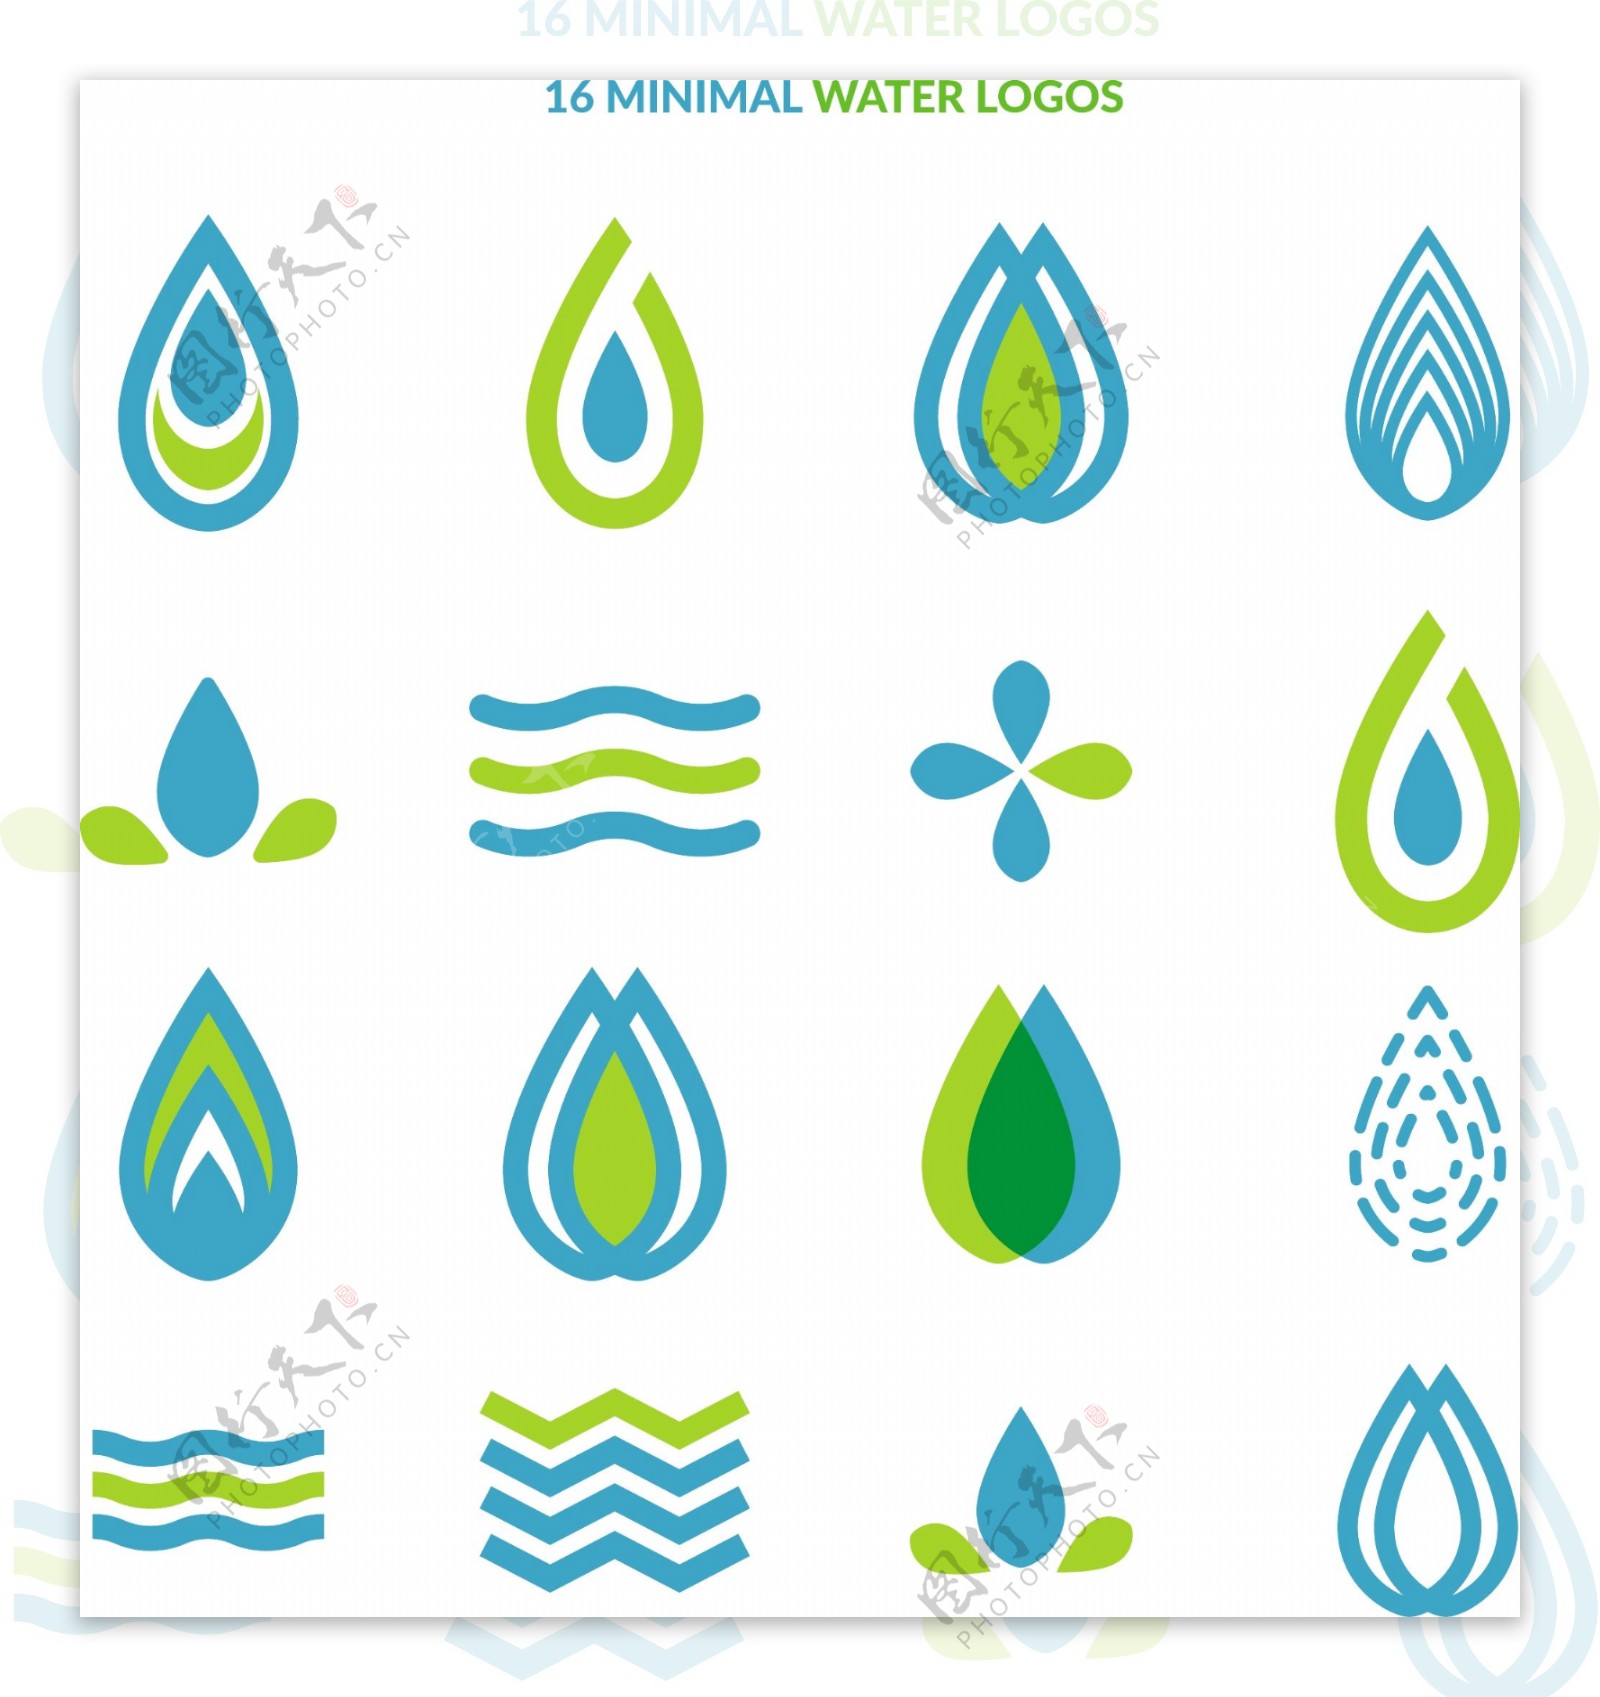 16款迷你水滴标志设计矢量素材